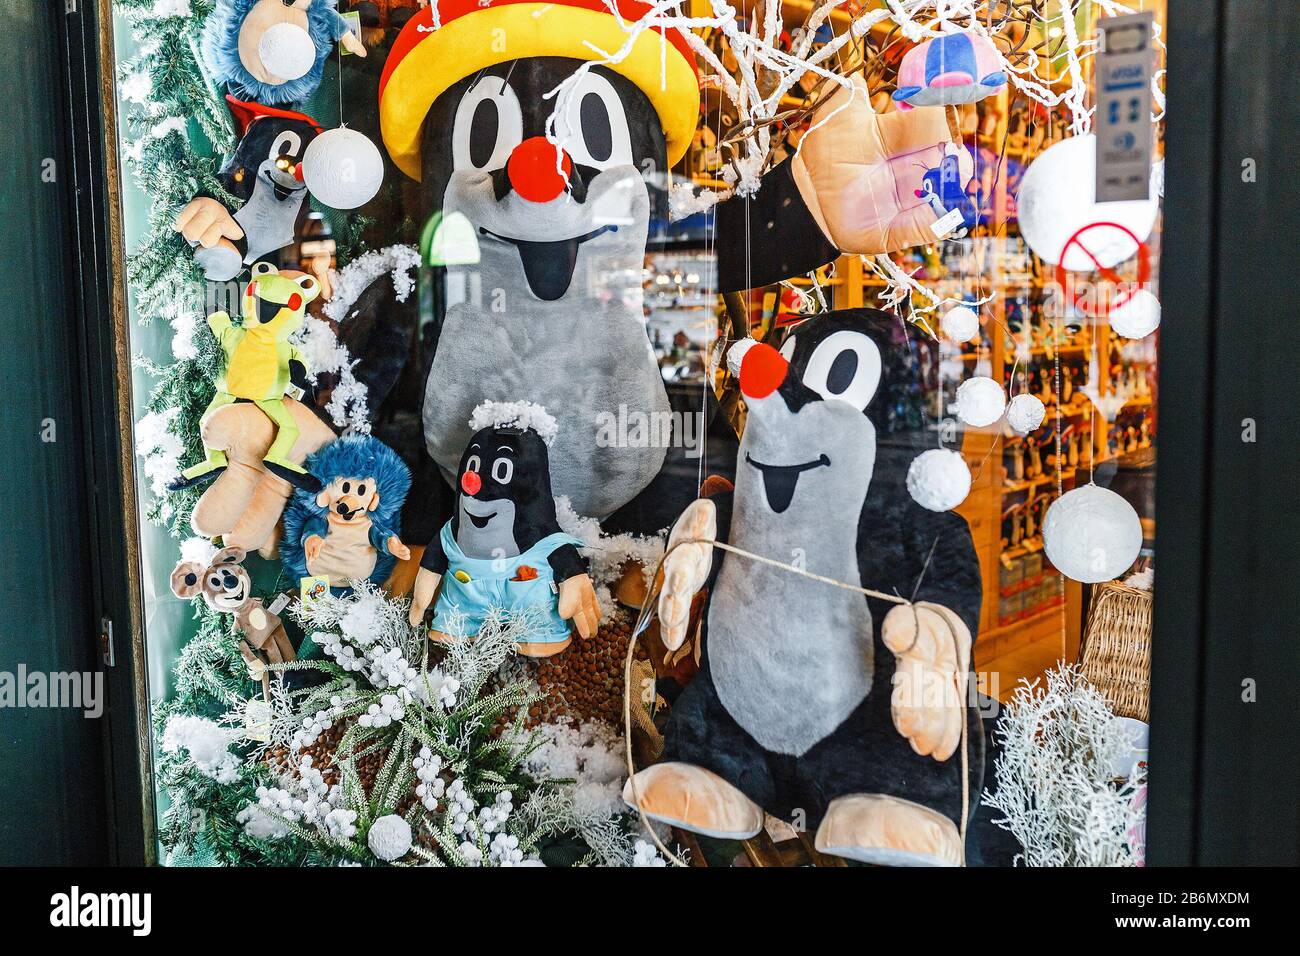 2017 de diciembre, PRAGA, REPÚBLICA CHECA: El famoso personaje checo de dibujos animados Krtek mole en una tienda de recuerdos está a la venta Foto de stock